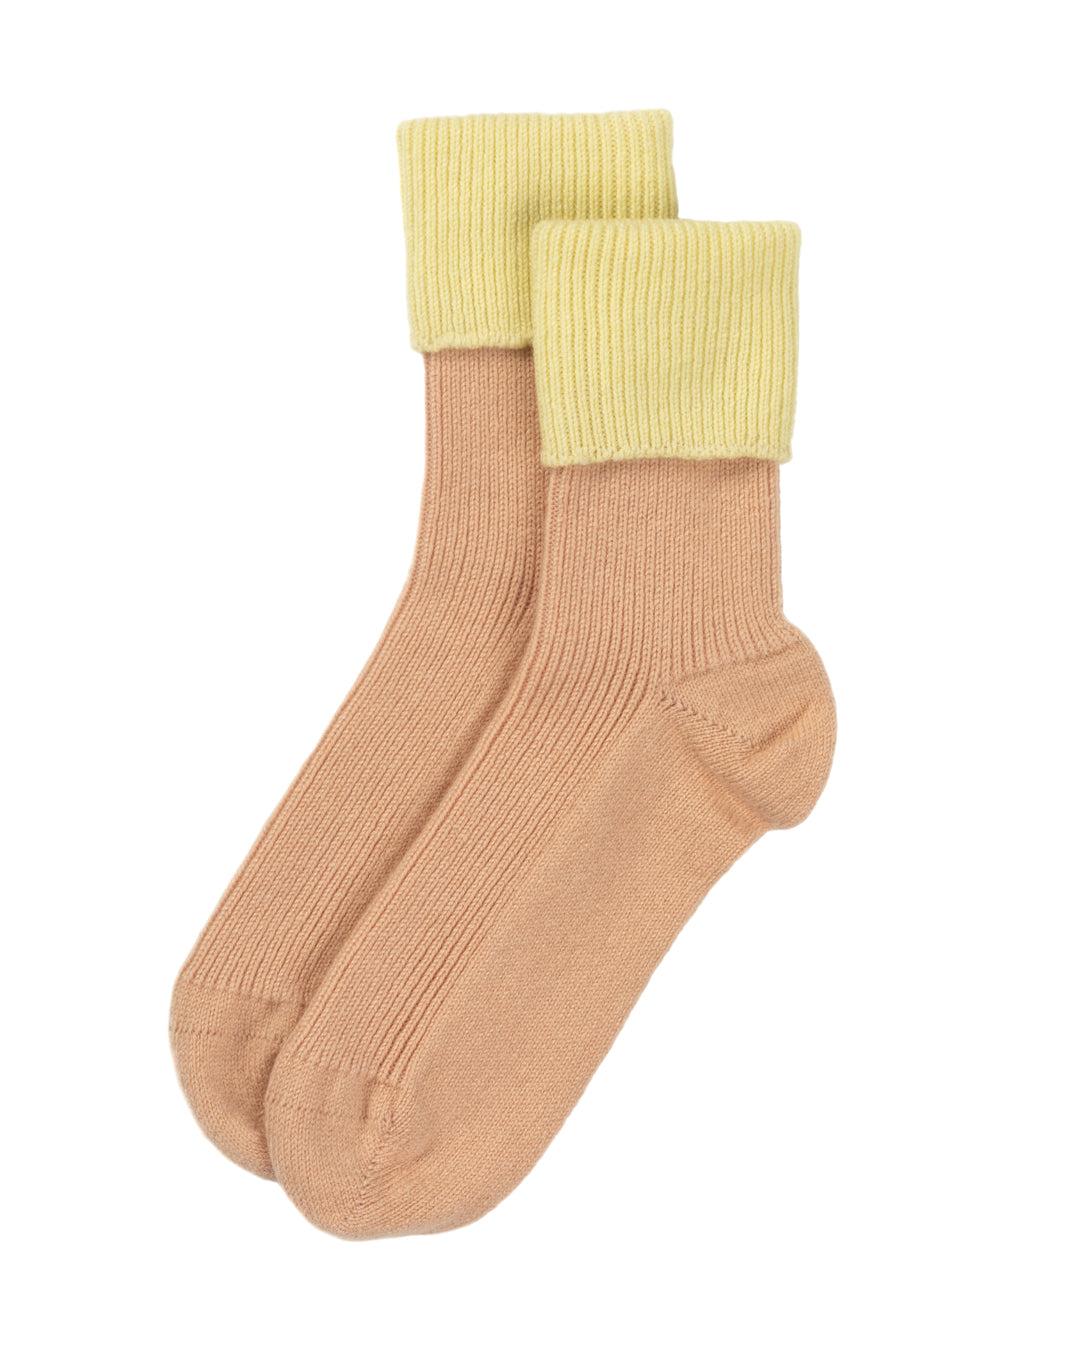 Rosie Sugden Cashmere Socks